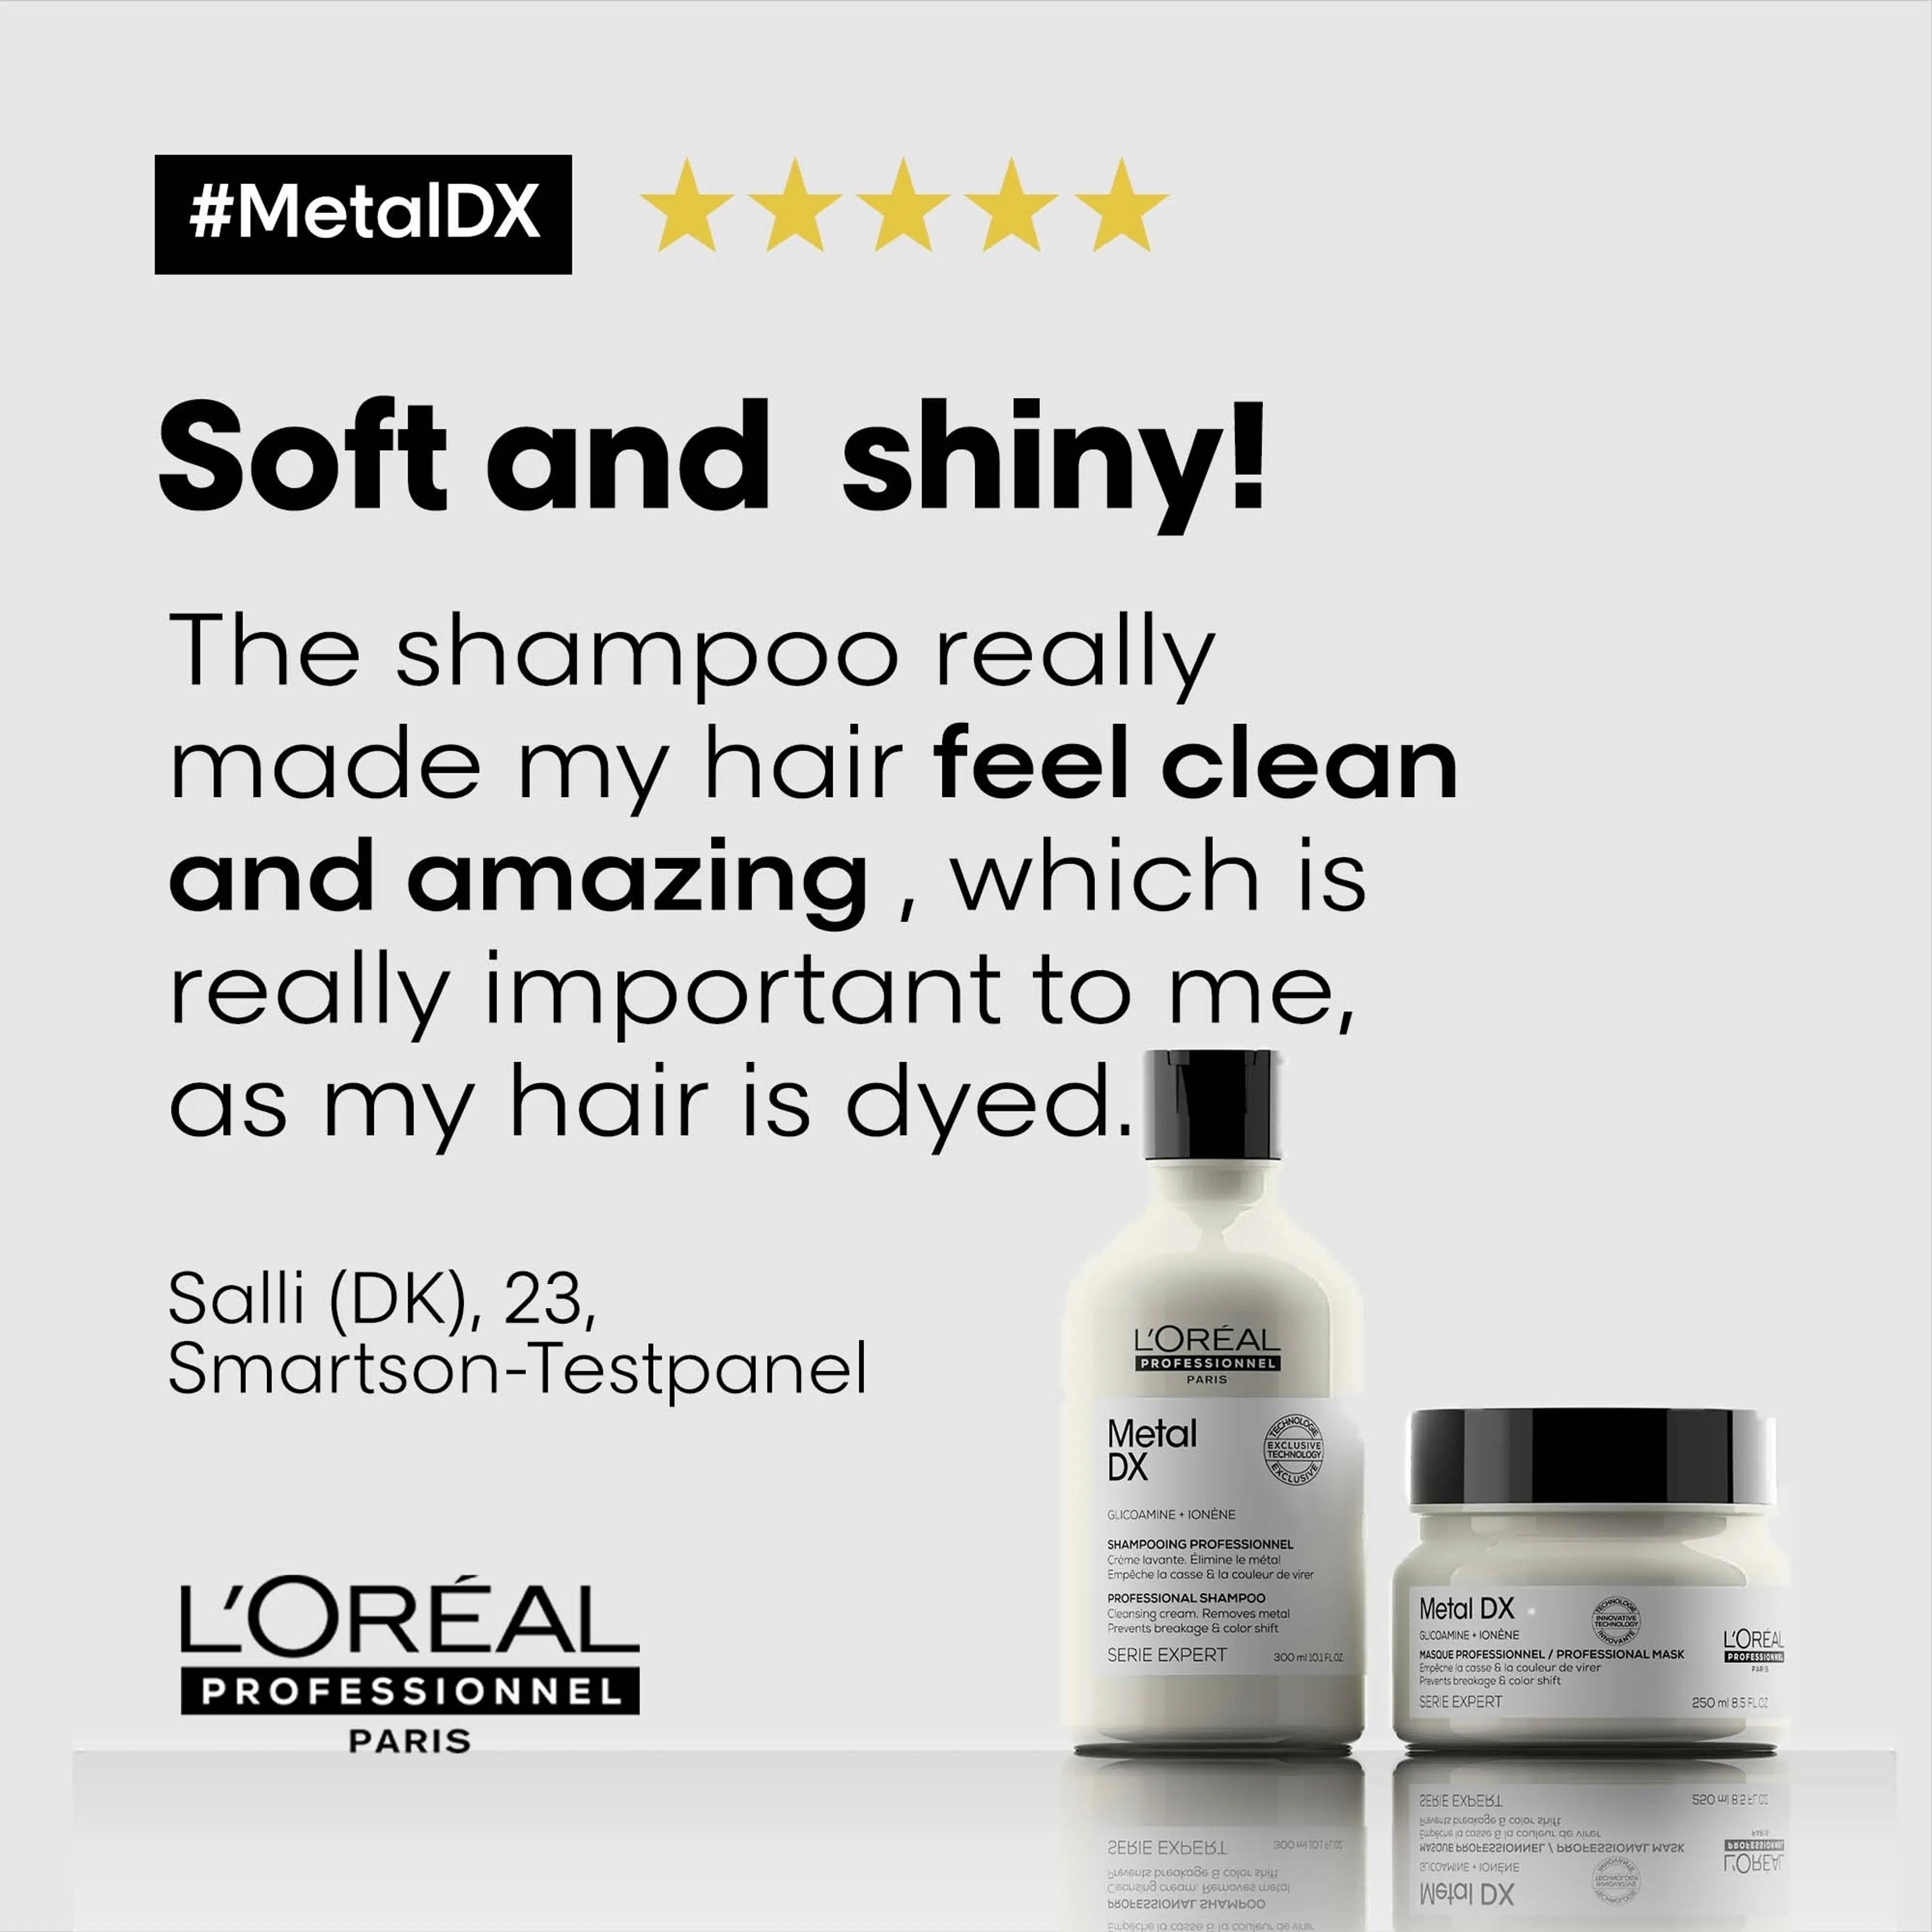 L'Oréal Professionnel Série Expert Metal Dx Shampoo 500 ml